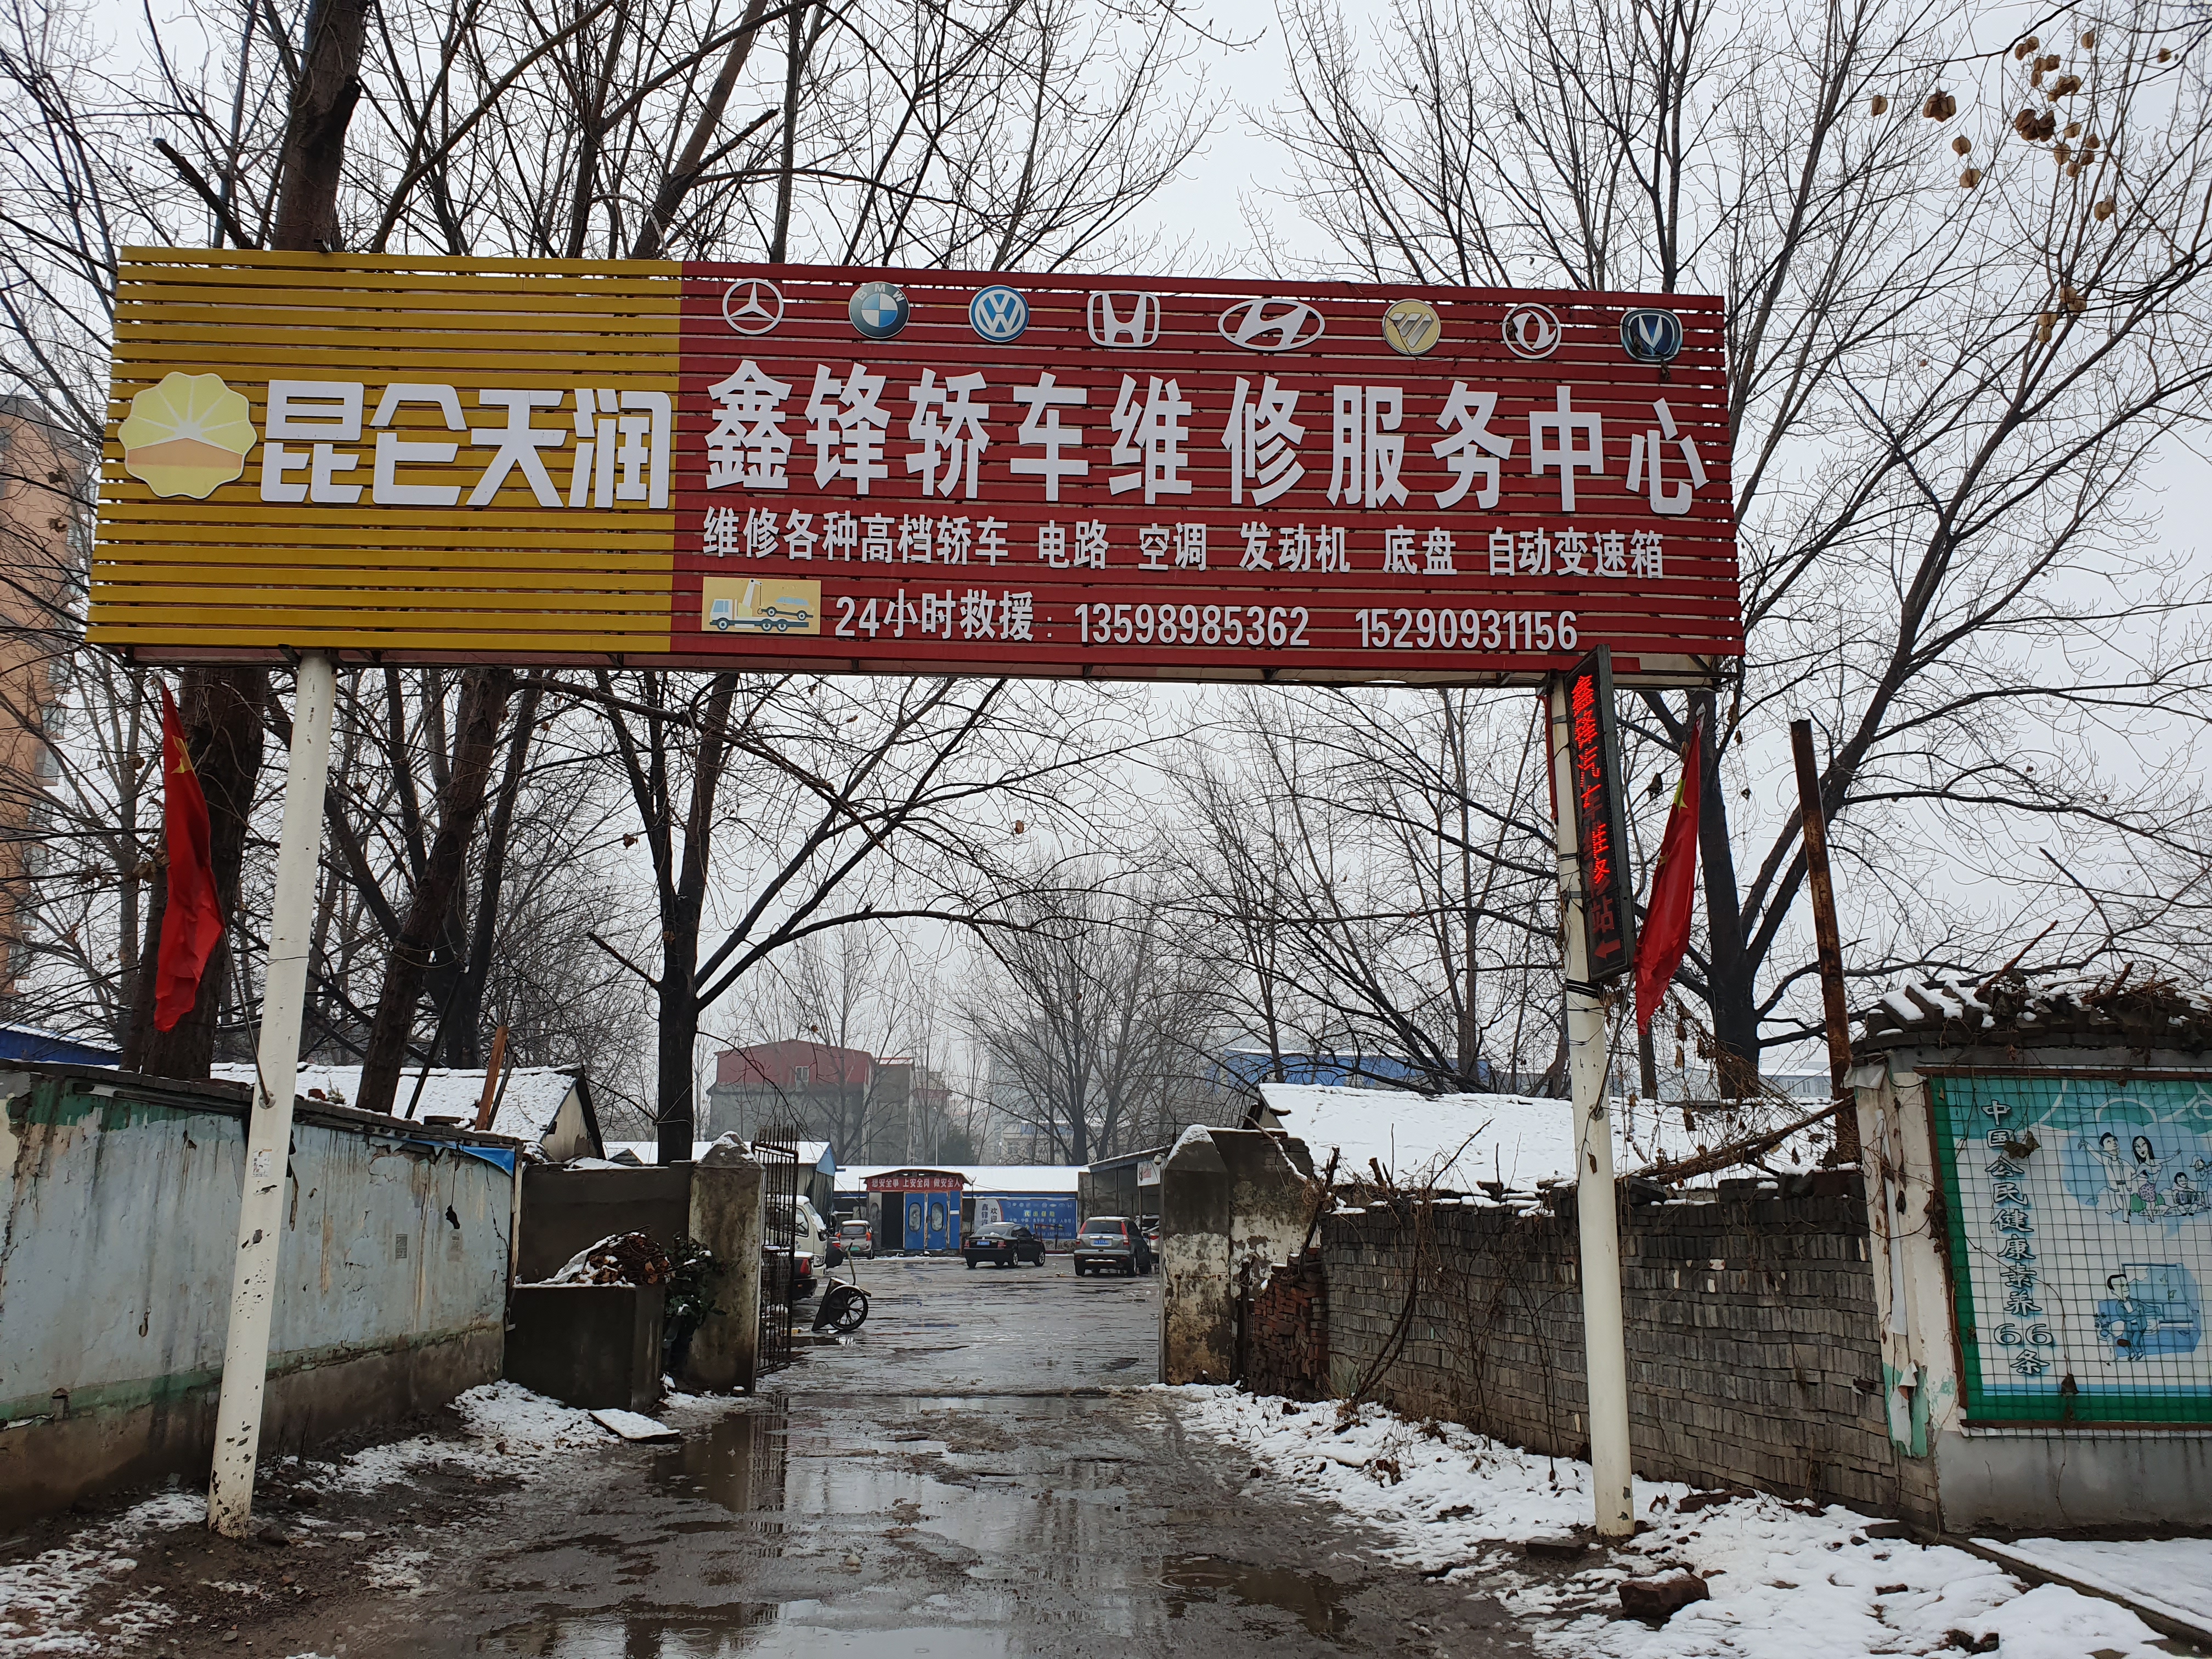 许昌襄城县自然资源局回应土地挂牌出让投诉 称确实存在瑕疵 